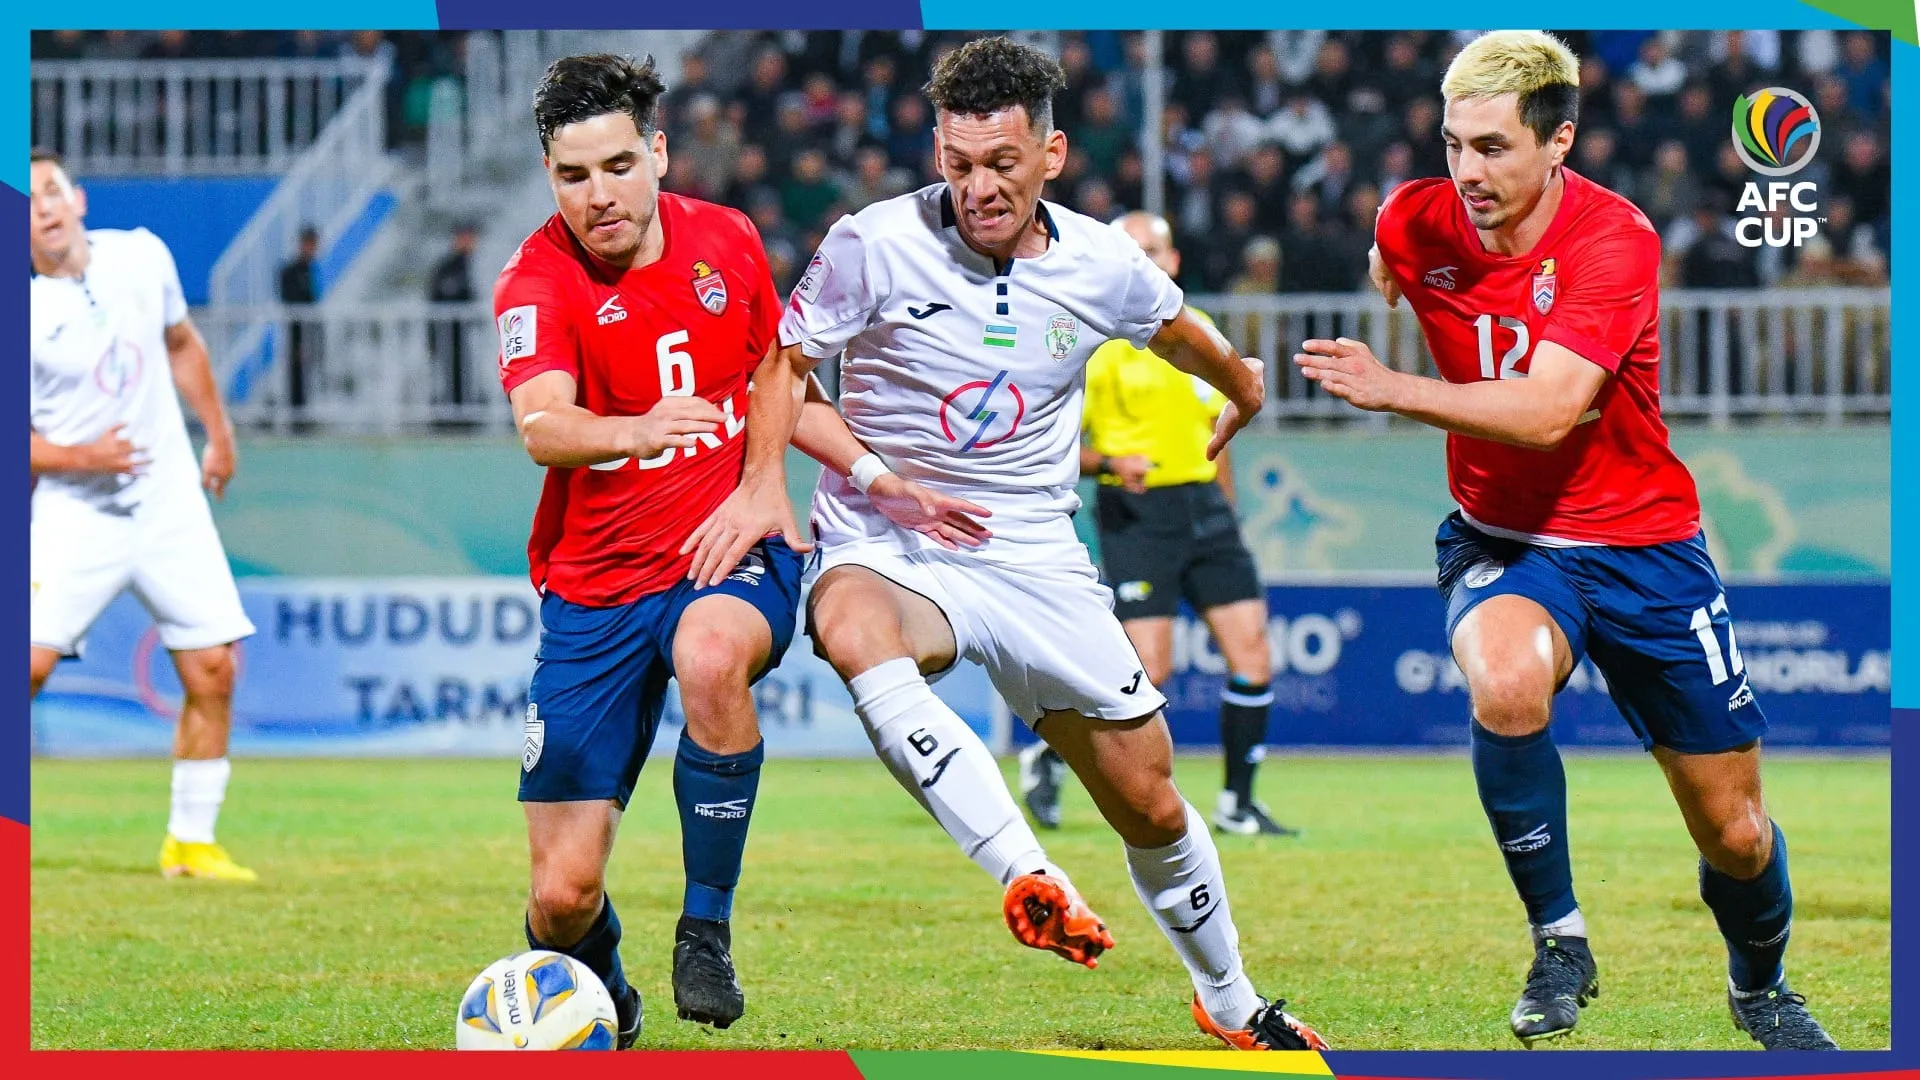 Đại diện ĐNÁ bất ngờ vào chung kết AFC Cup 2022 - U17 Indonesia ttạo nên địa chấn